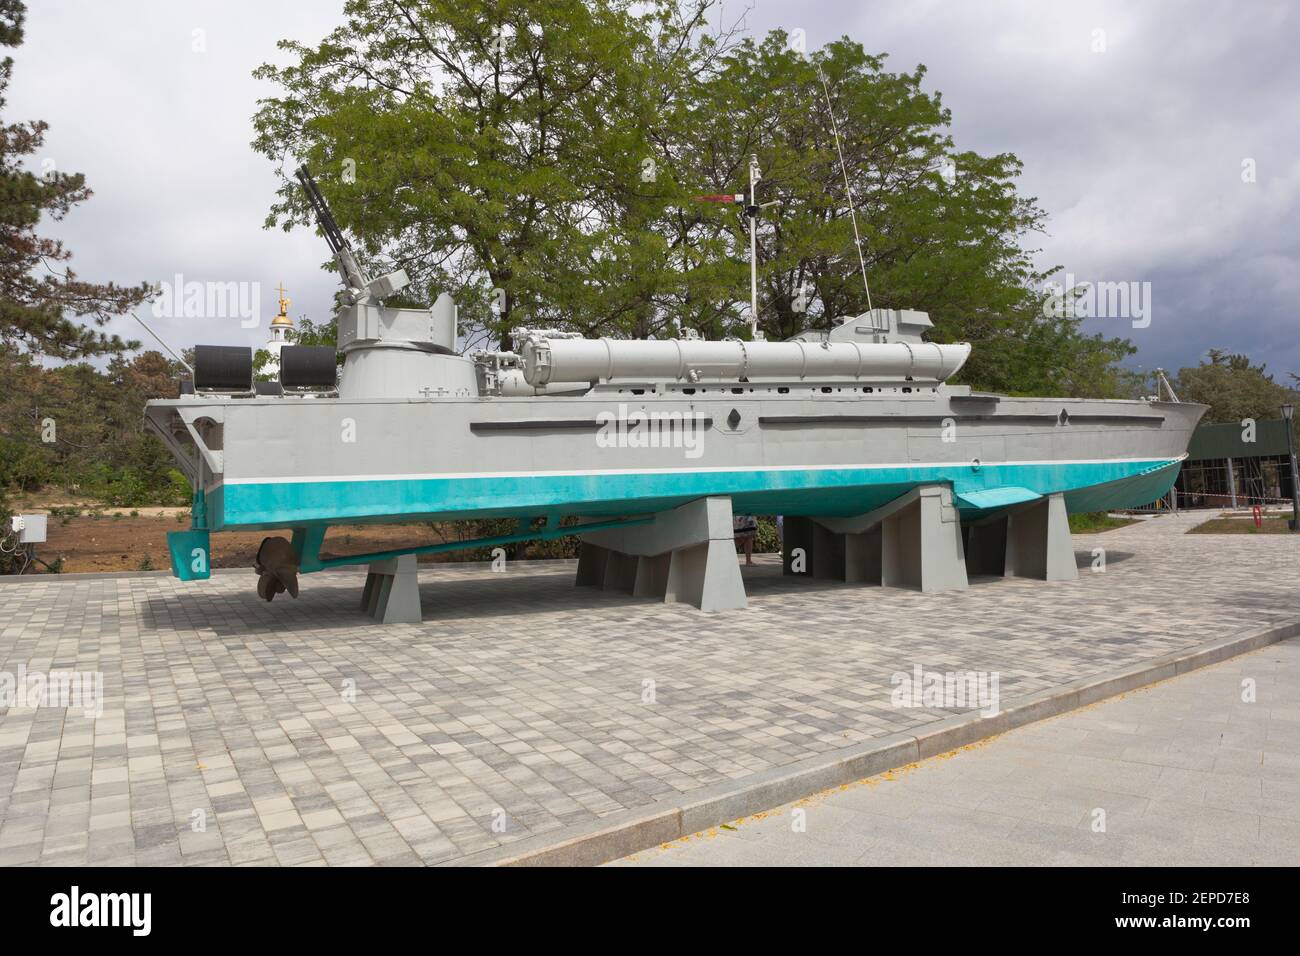 Sevastopol, Crimea, Russia - July 28, 2020: Torpedo boat 123-K Komsomolets in the memorial complex Sapun-Gora in the hero city of Sevastopol, Crimea Stock Photo